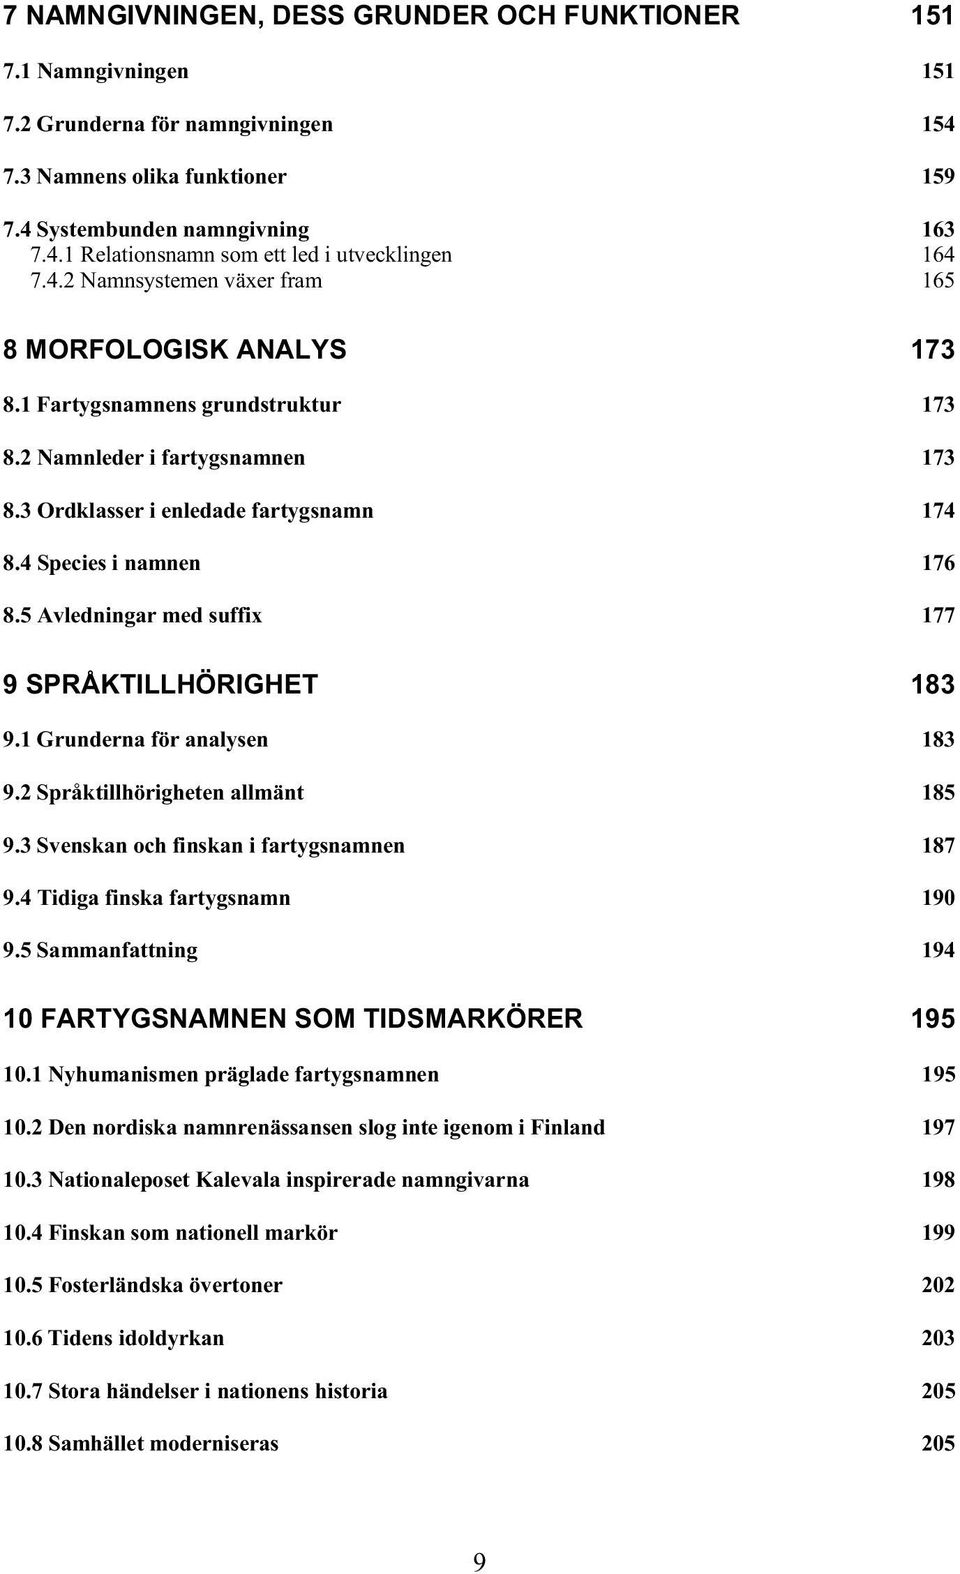 5 Avledningar med suffix 177 9 SPRÅKTILLHÖRIGHET 183 9.1 Grunderna för analysen 183 9.2 Språktillhörigheten allmänt 185 9.3 Svenskan och finskan i fartygsnamnen 187 9.